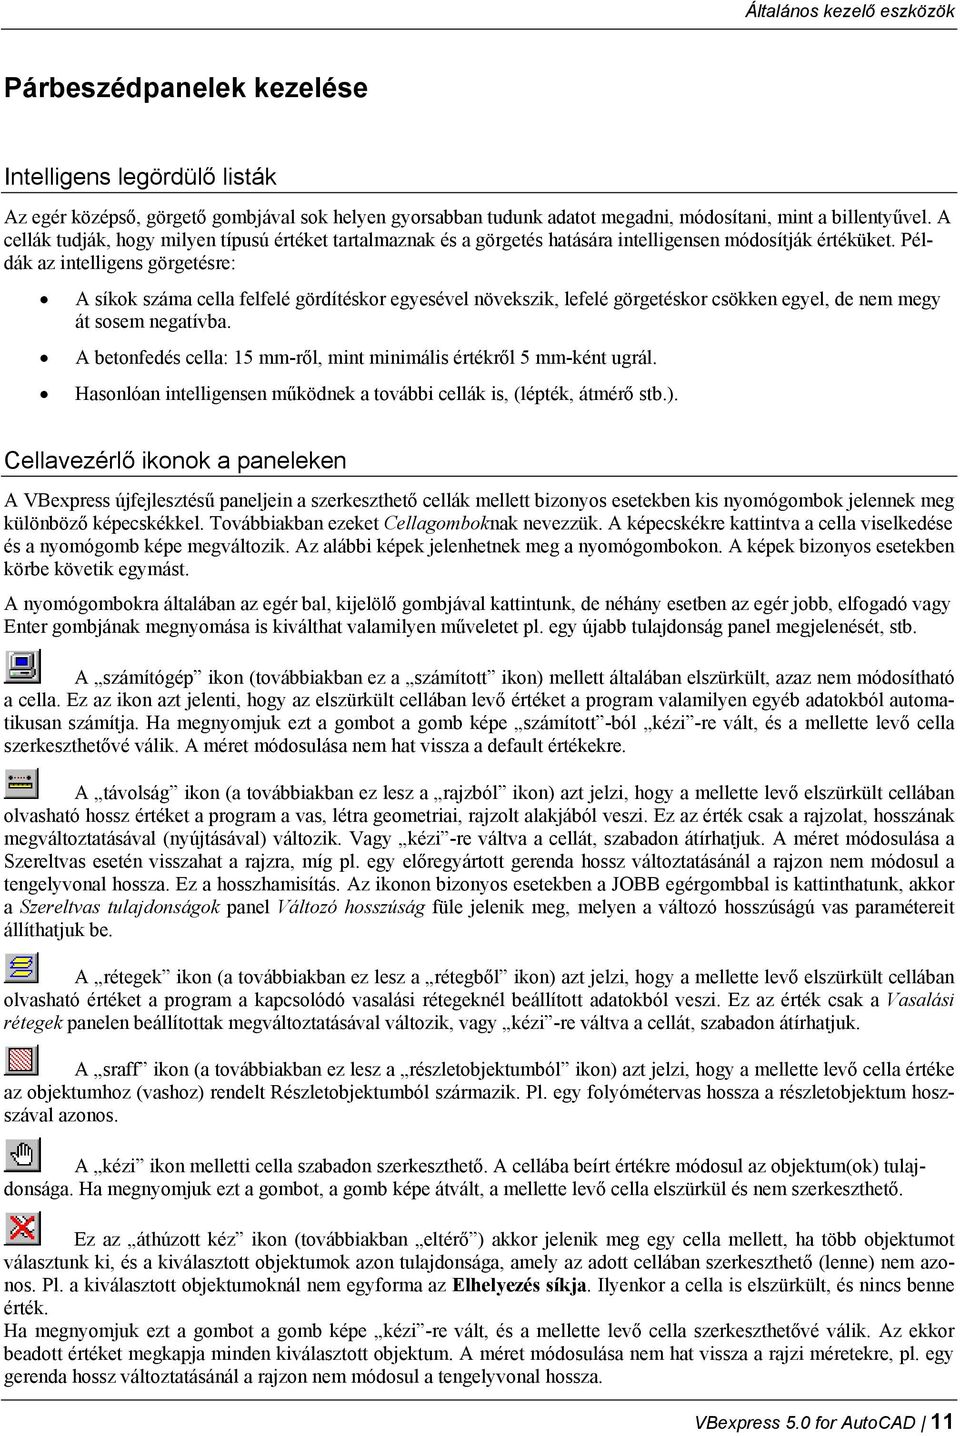 VBexpress 5.0. for AutoCAD. Vasbetonterv szerkesztő alkalmazás AutoCAD 2000  AutoCAD 2007 programokhoz. Kézikönyv. Készítette: Papp Ernő, Müller Tamás -  PDF Ingyenes letöltés